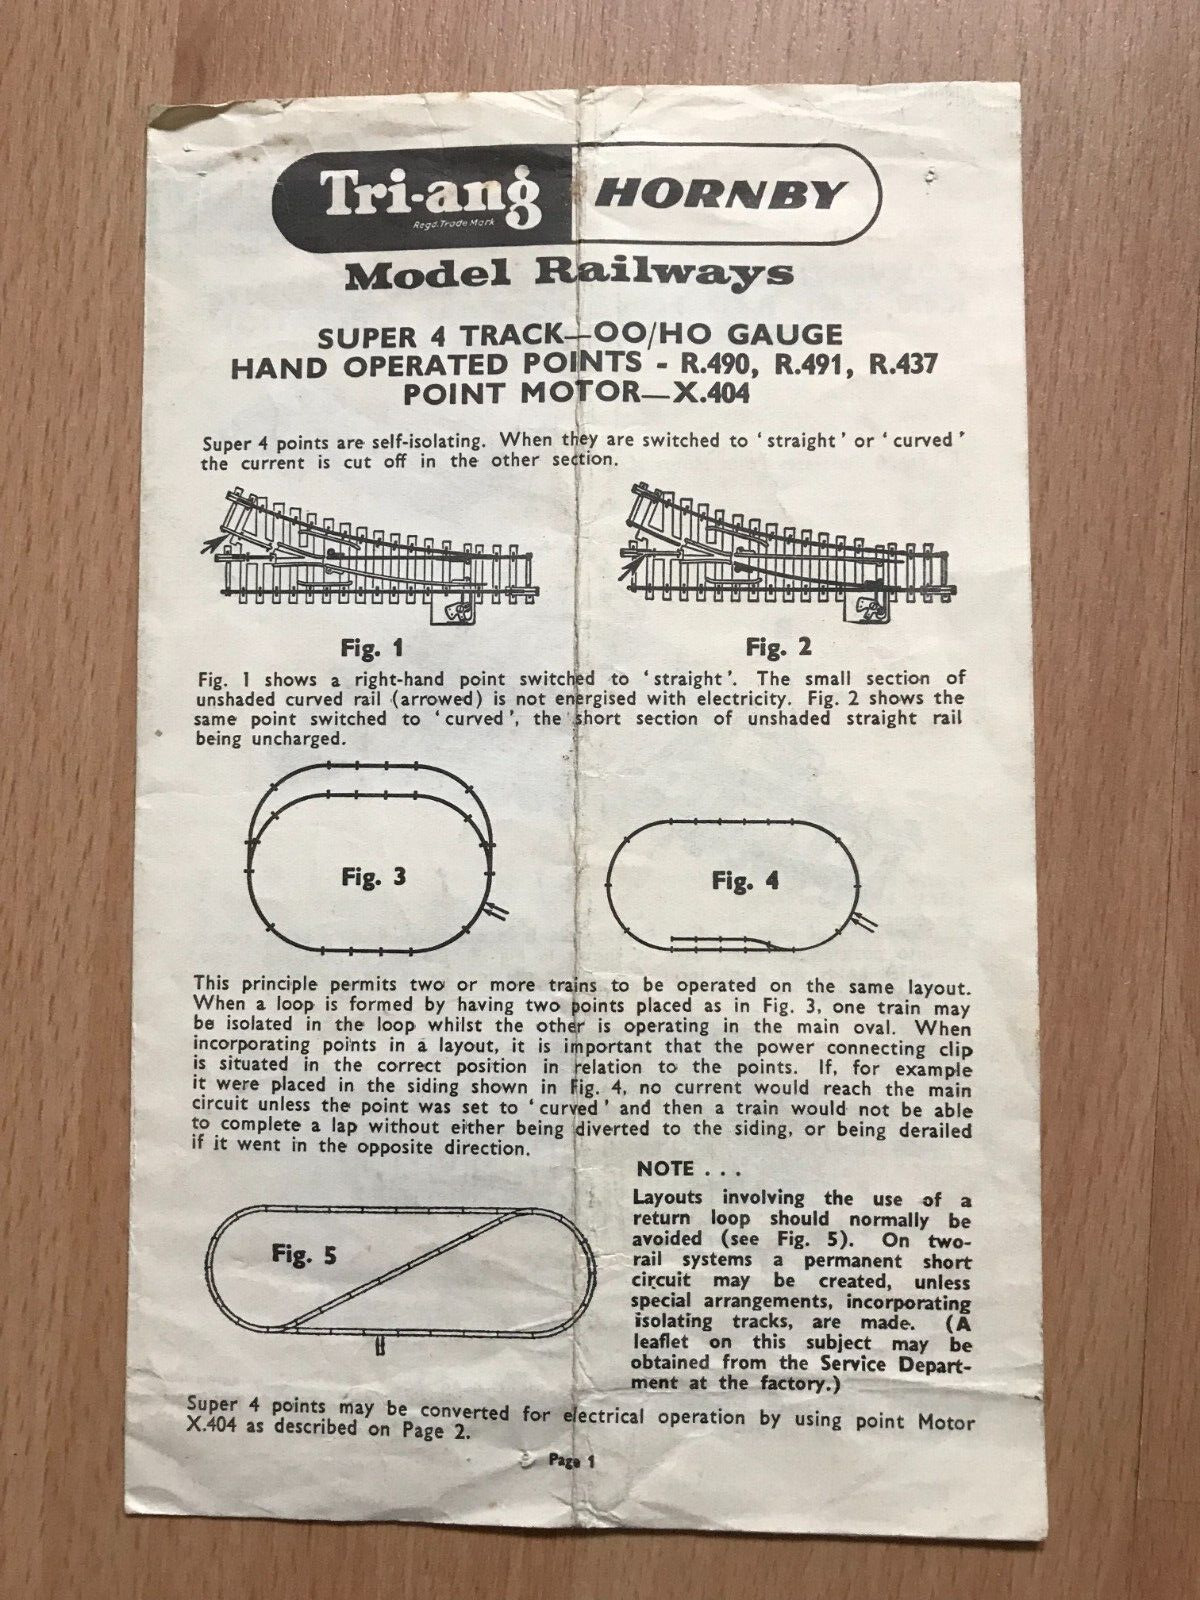 Vintage Triang Hornby model railways instruction leaflet - super 4 track